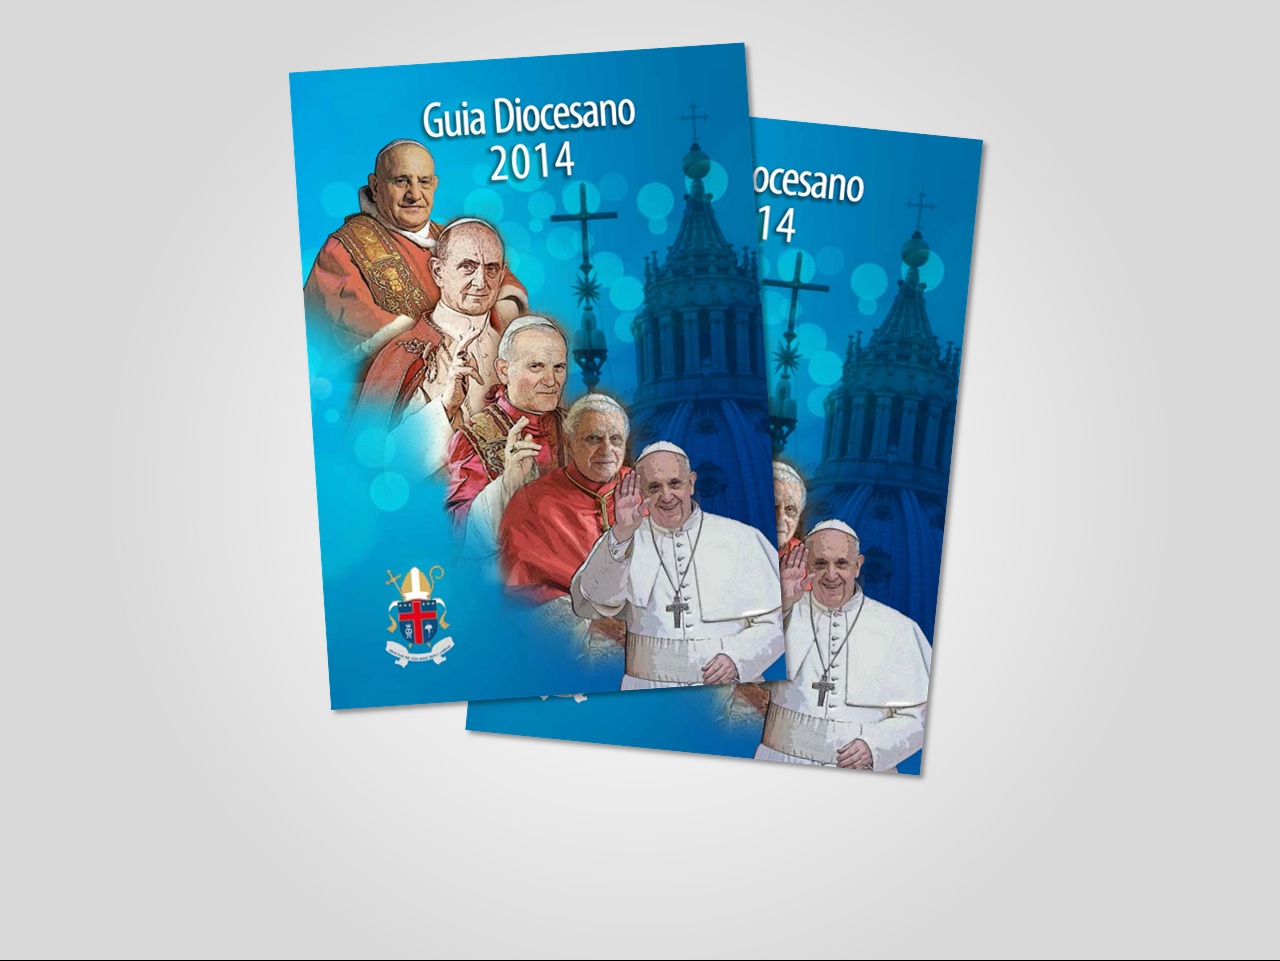 Guia Diocesano 2014 chega ao clero e lideranças diocesanas